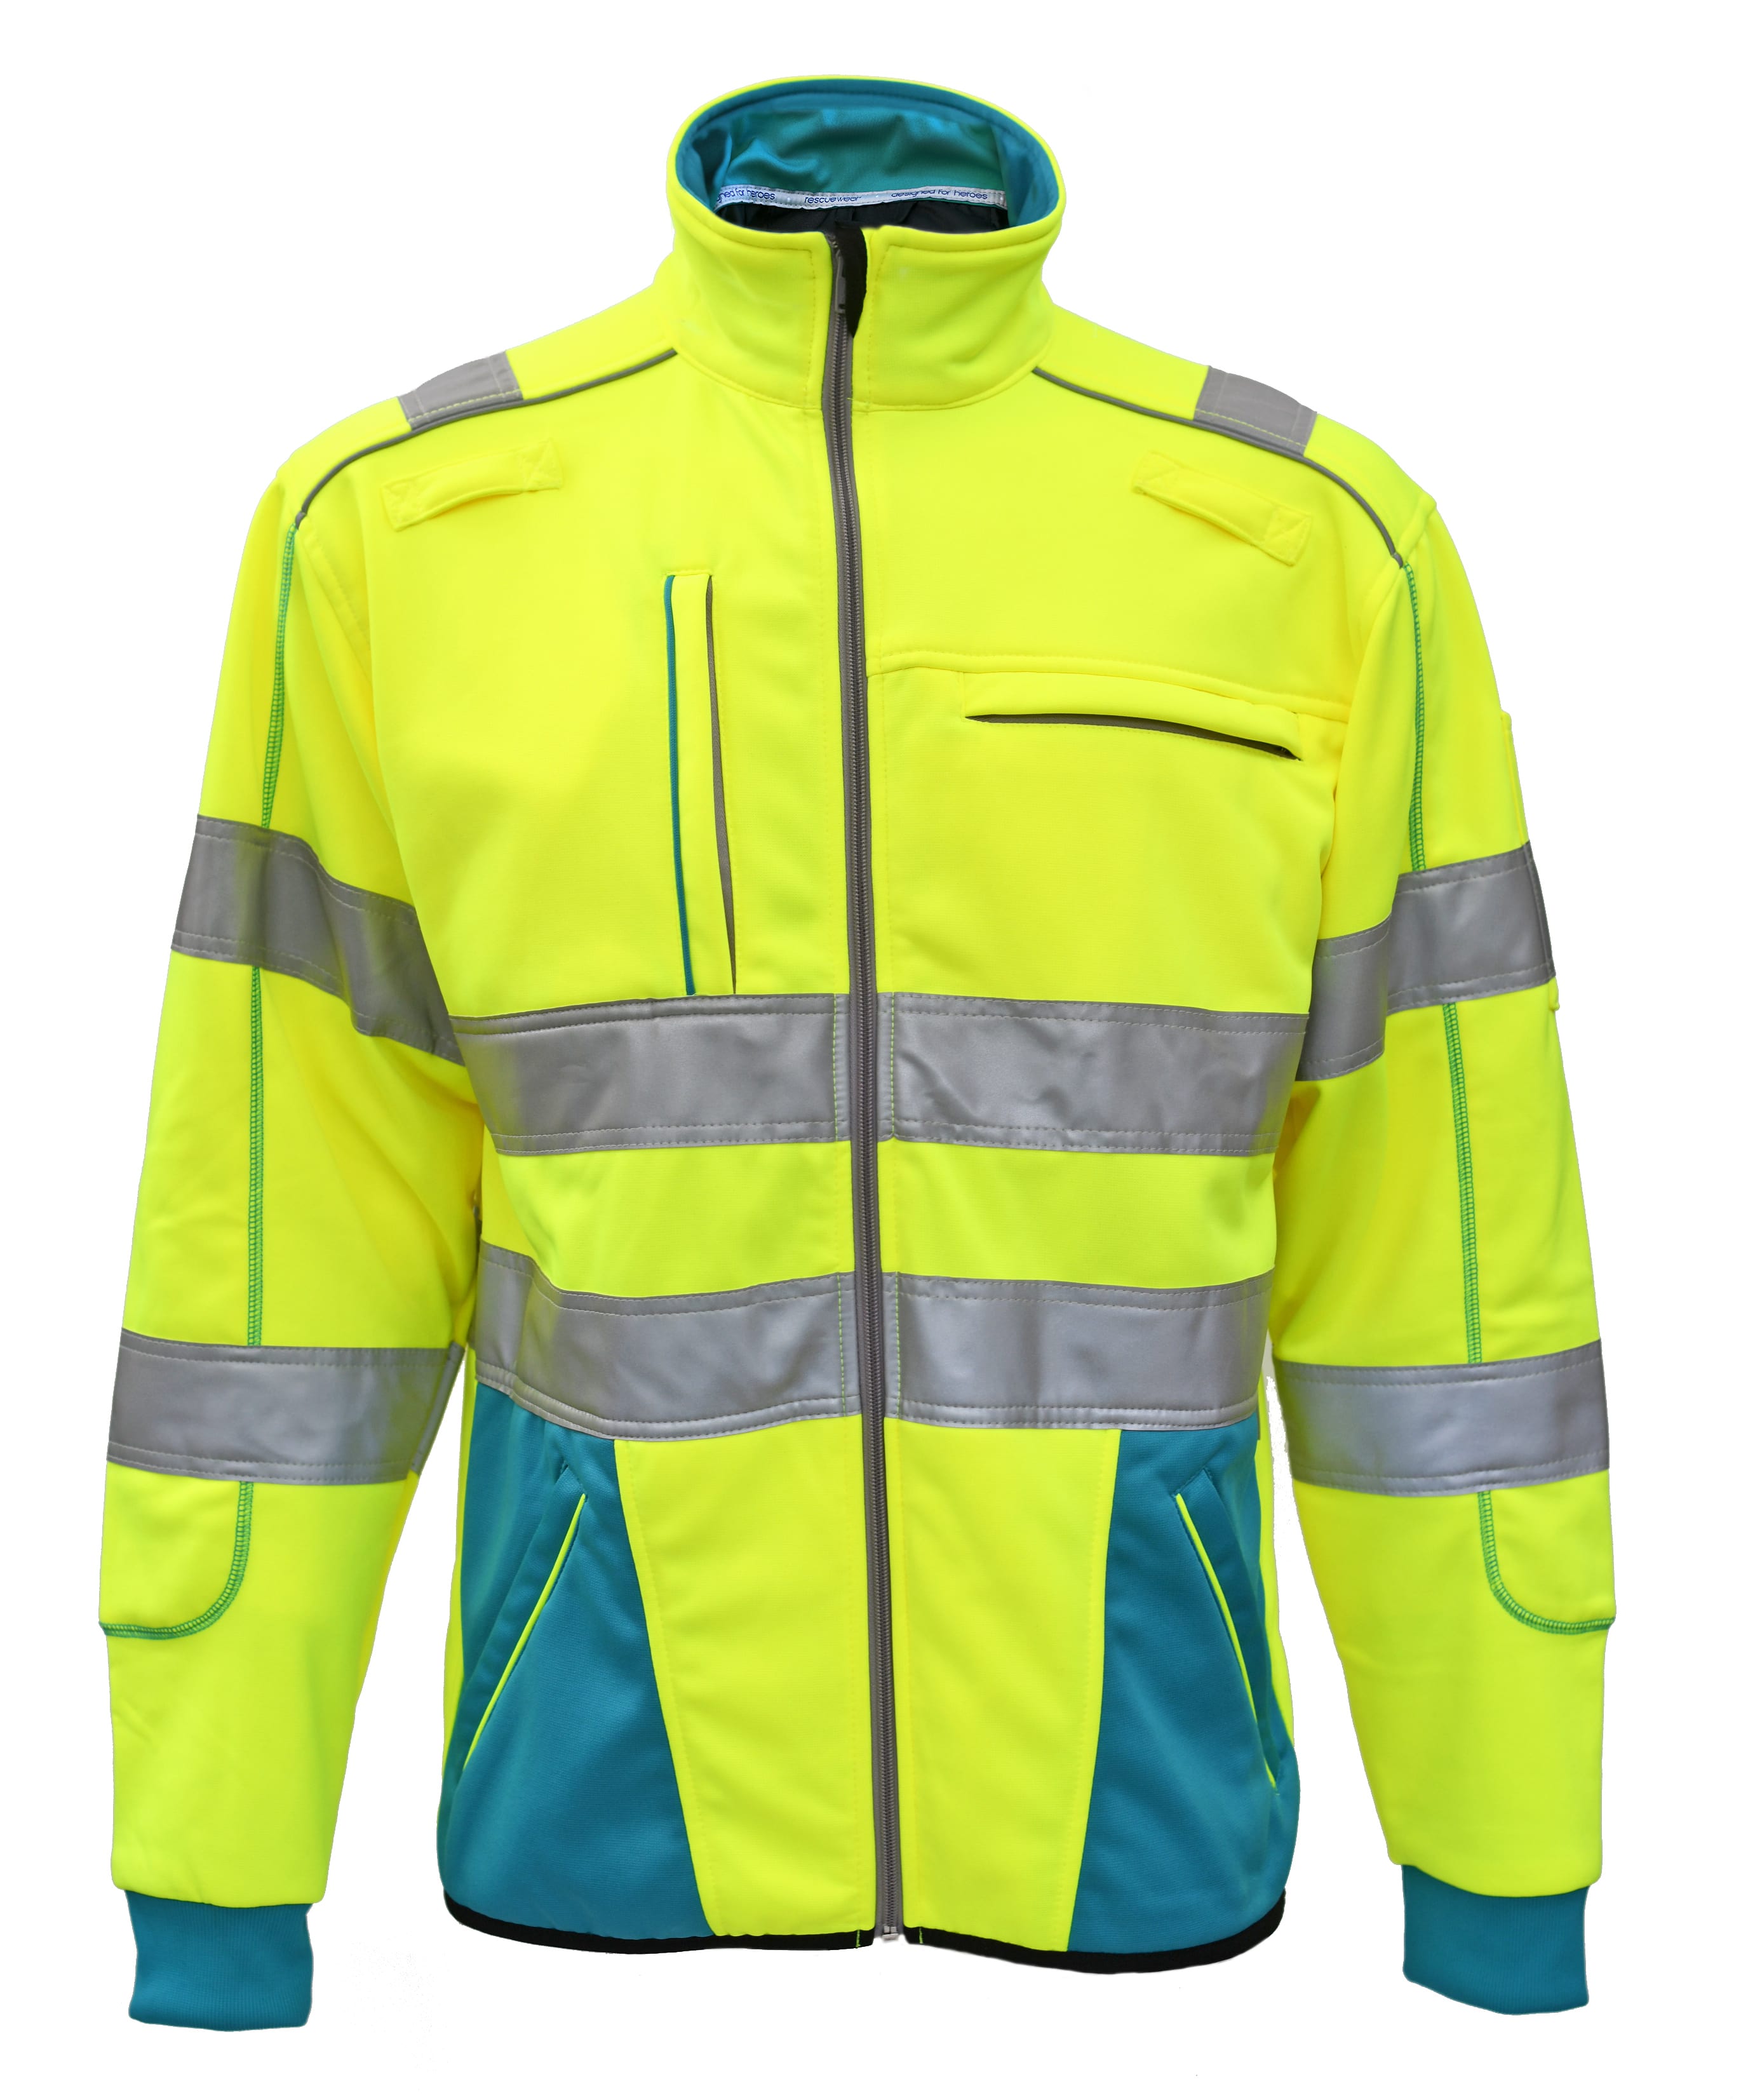 Rescuewear Sweatjacke Dynamic HiVis Klasse 3 Enamelblau / Neon Gelb - S